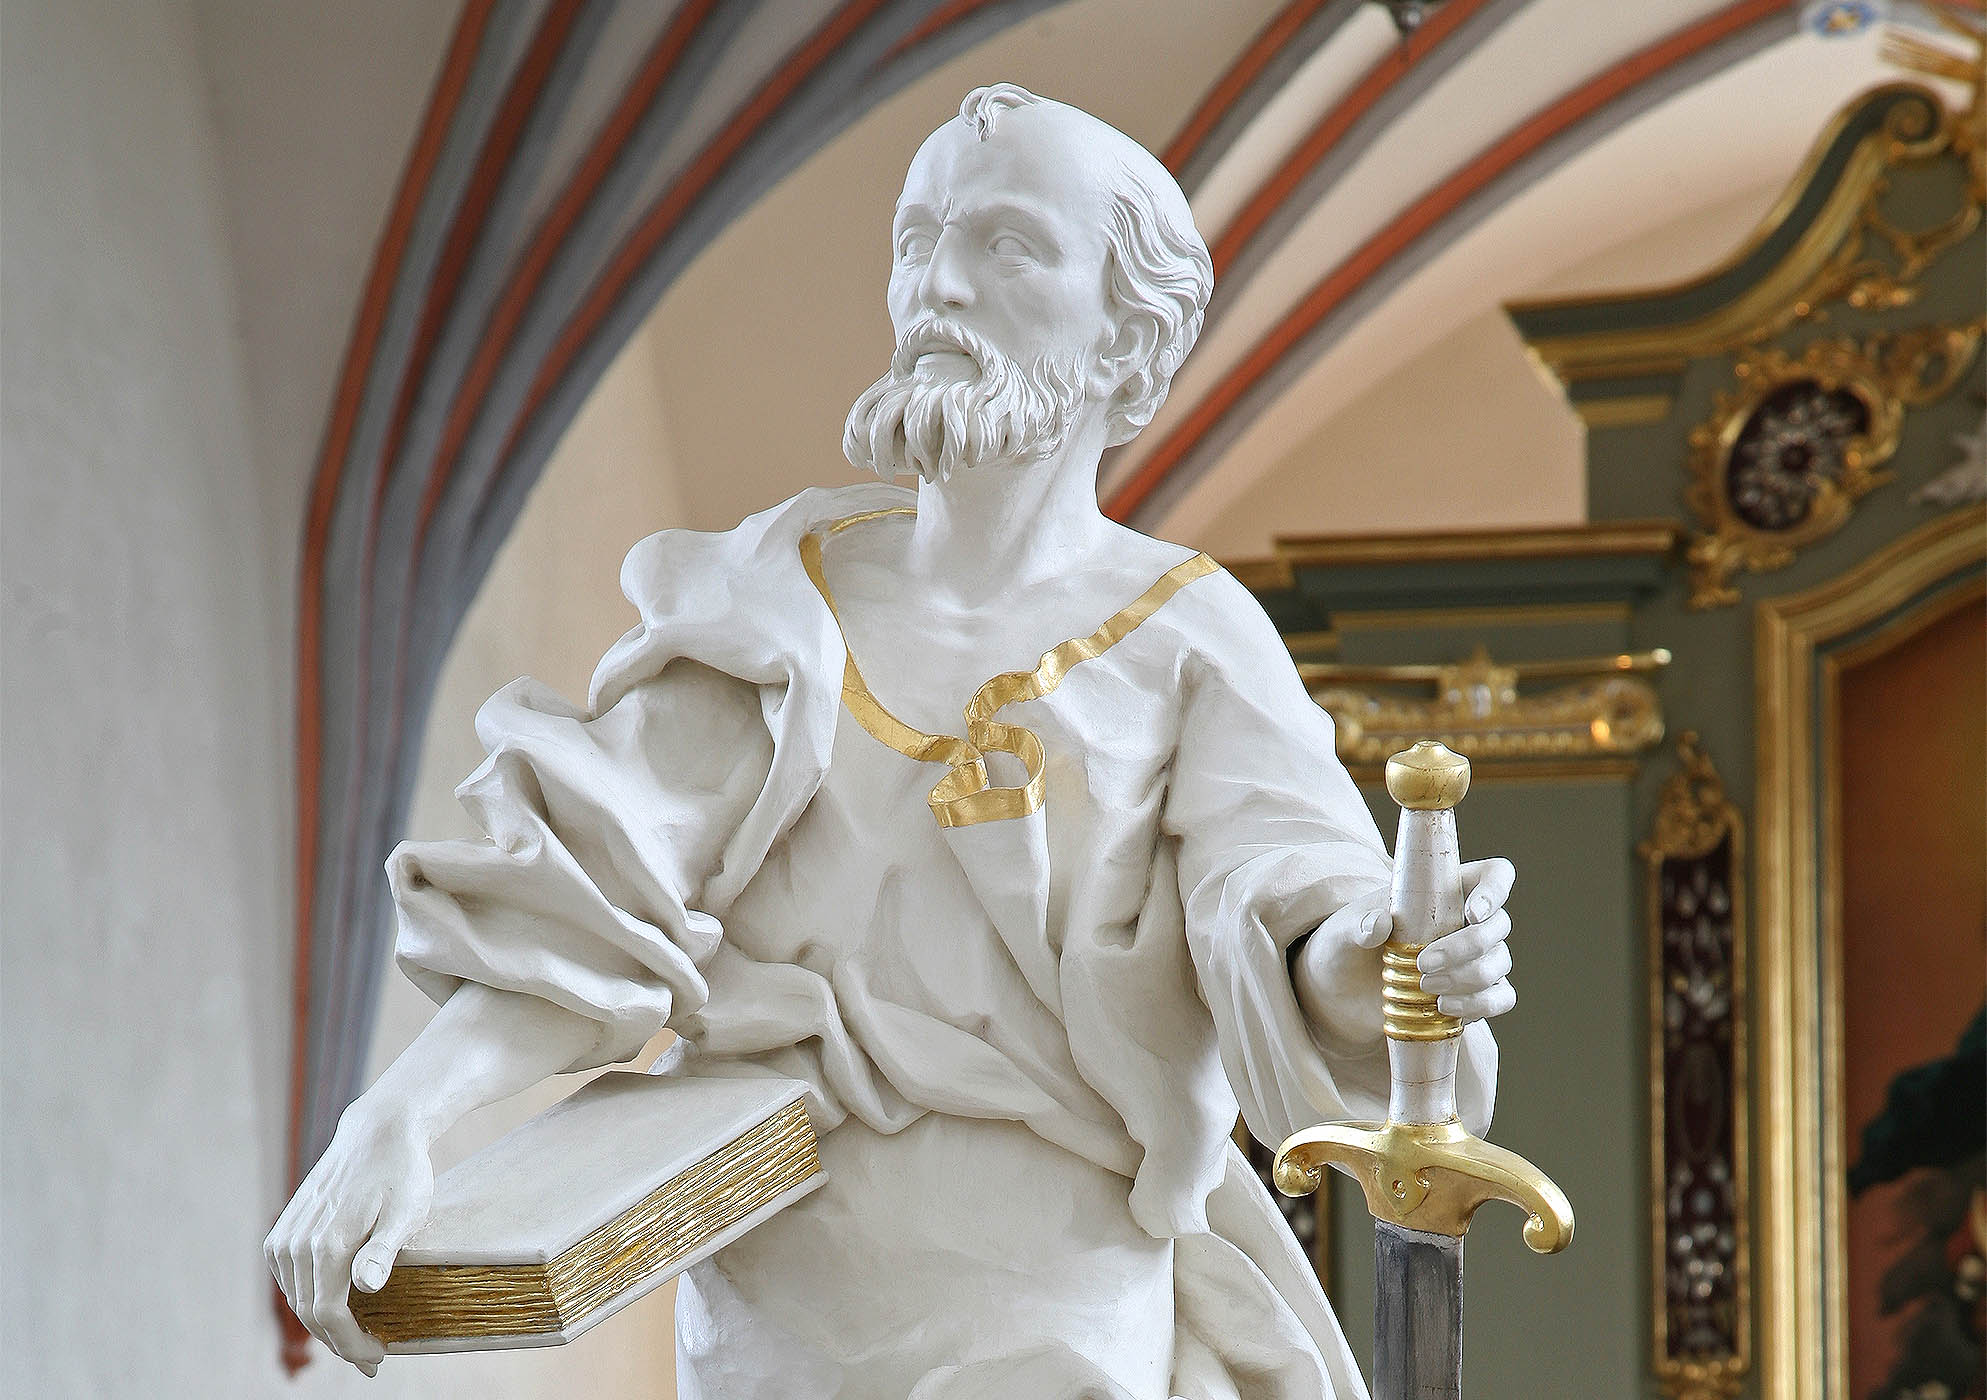 Rzeźba świętego Piotra część figuratywna ołtarzu głównego z kościoła świętego Pawła i Piotra w Gdańsku